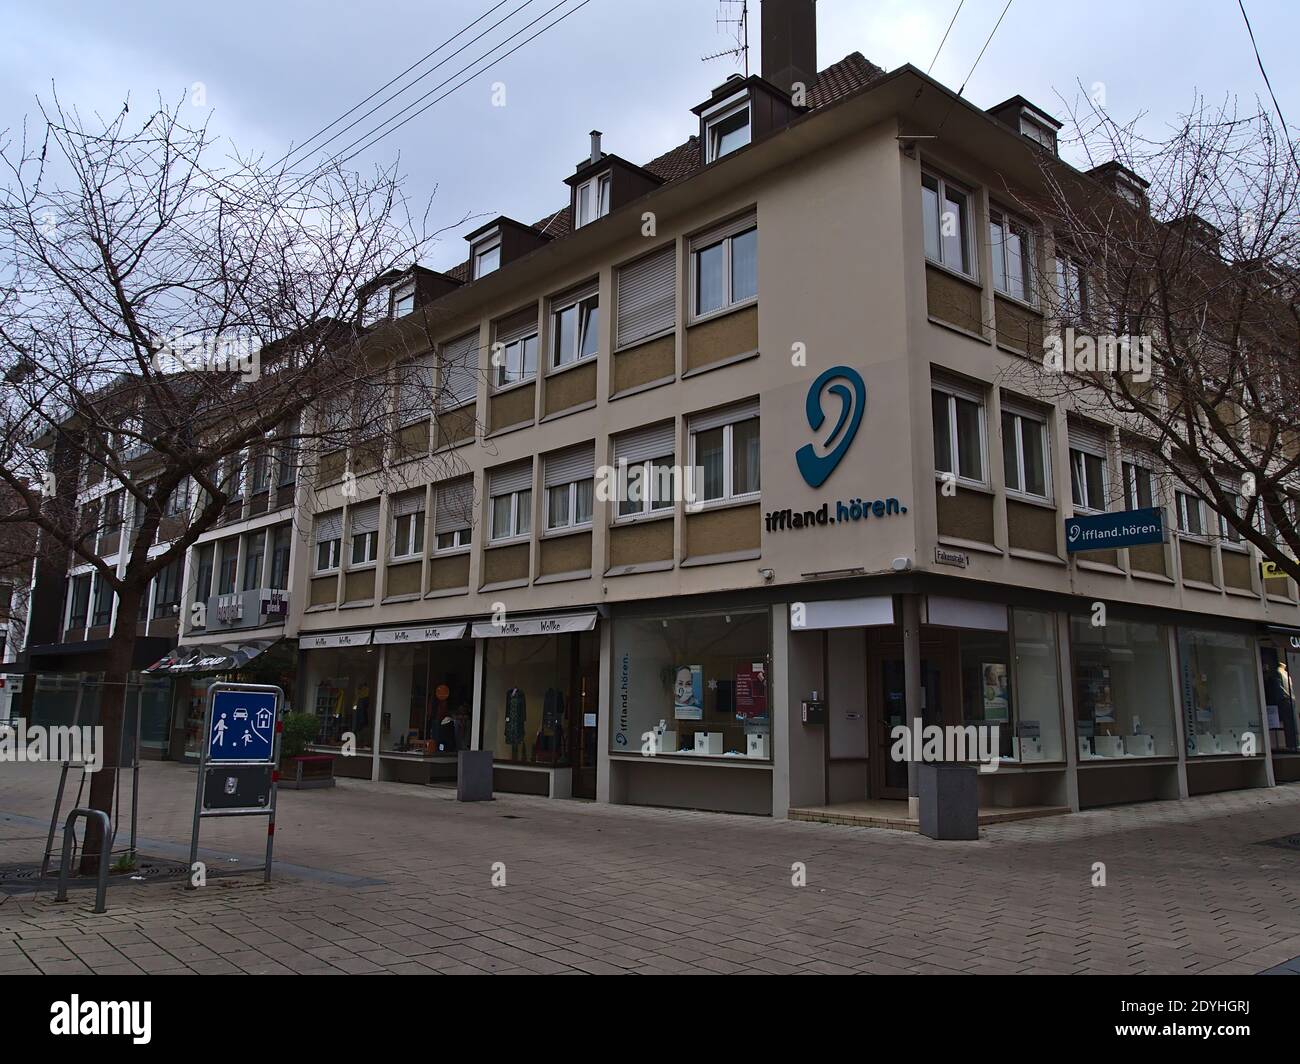 Branche fermée de la chaîne de vente de prothèses auditives allemandes Iffland Hören (également iffland.hören) dans la zone piétonne du centre-ville pendant le confinement de Covid-19. Banque D'Images